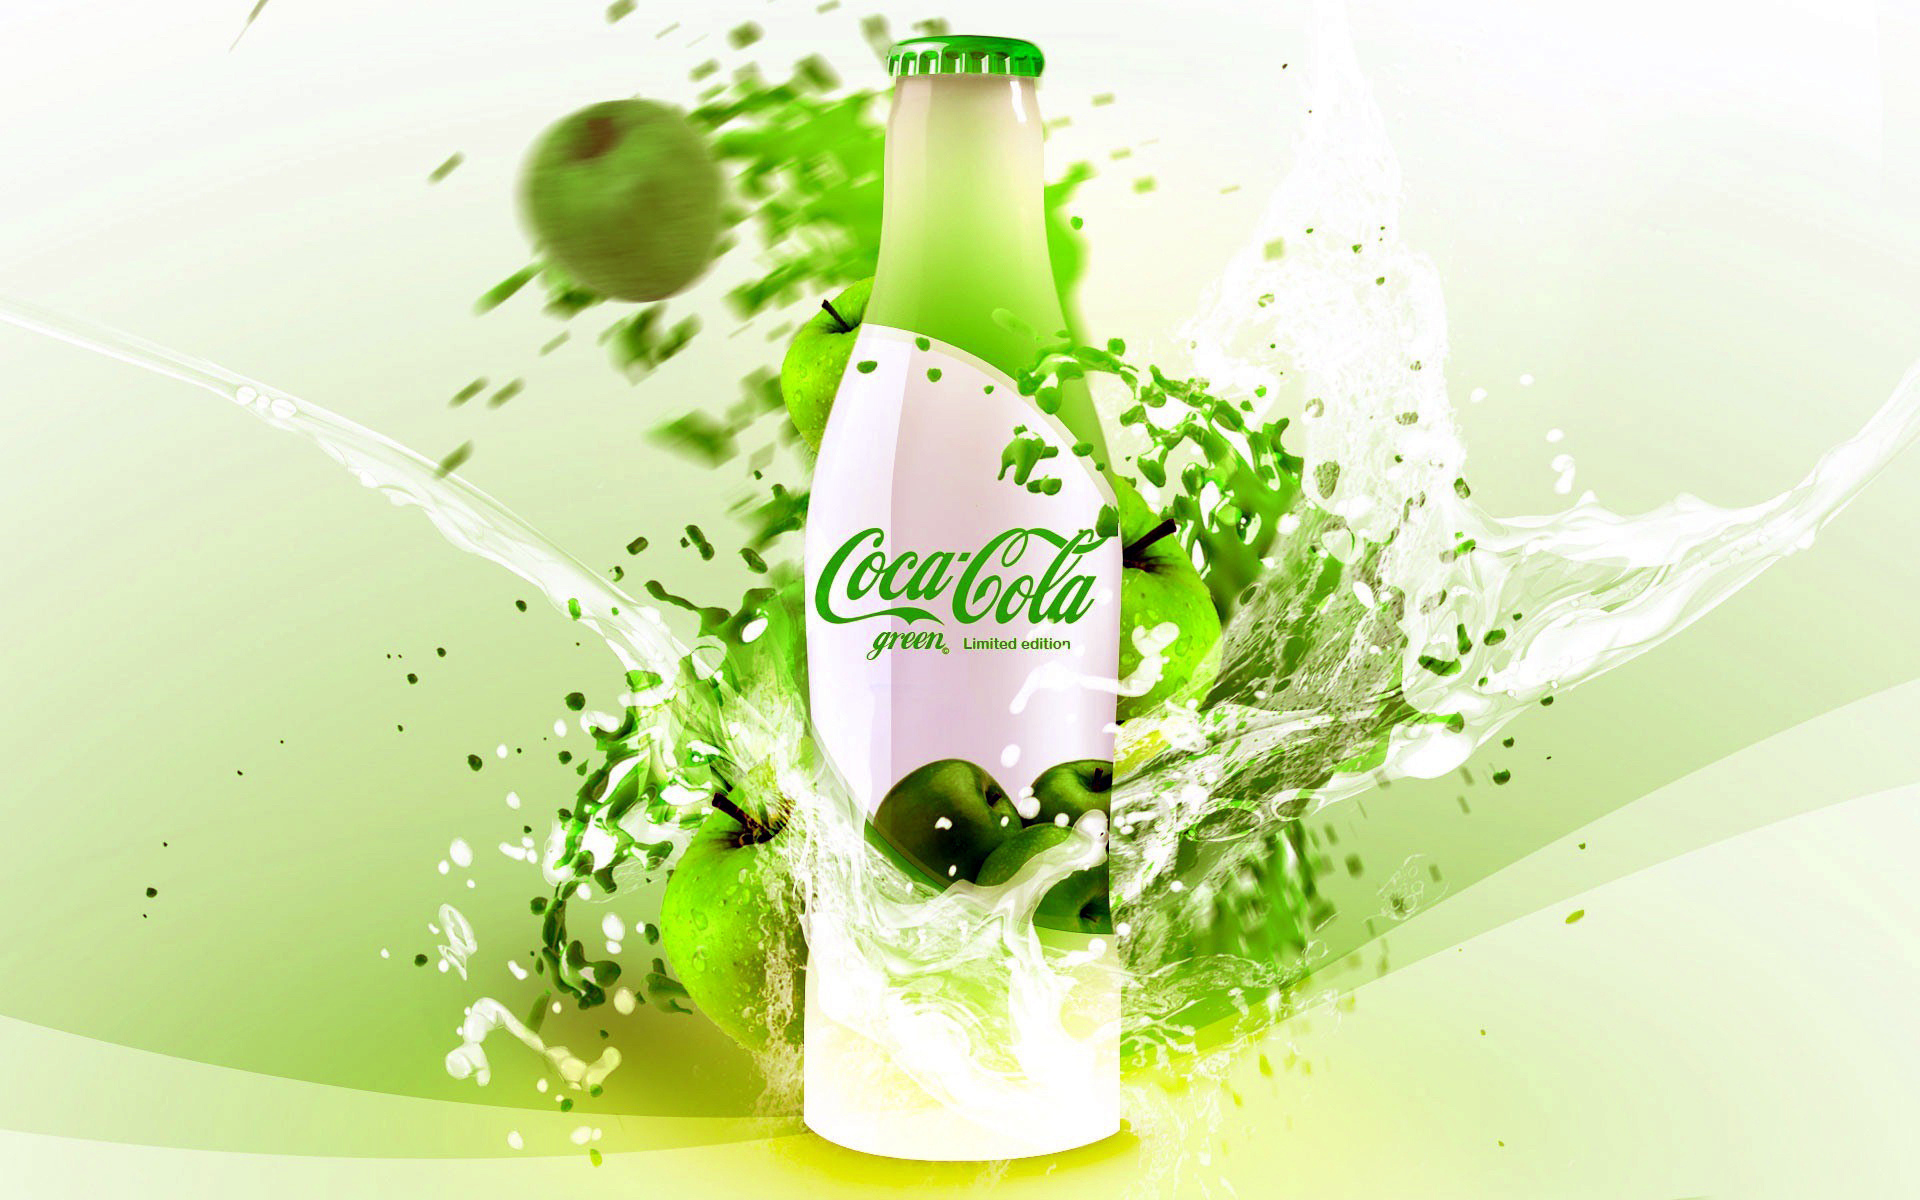 brands, coca cola, green, drinks